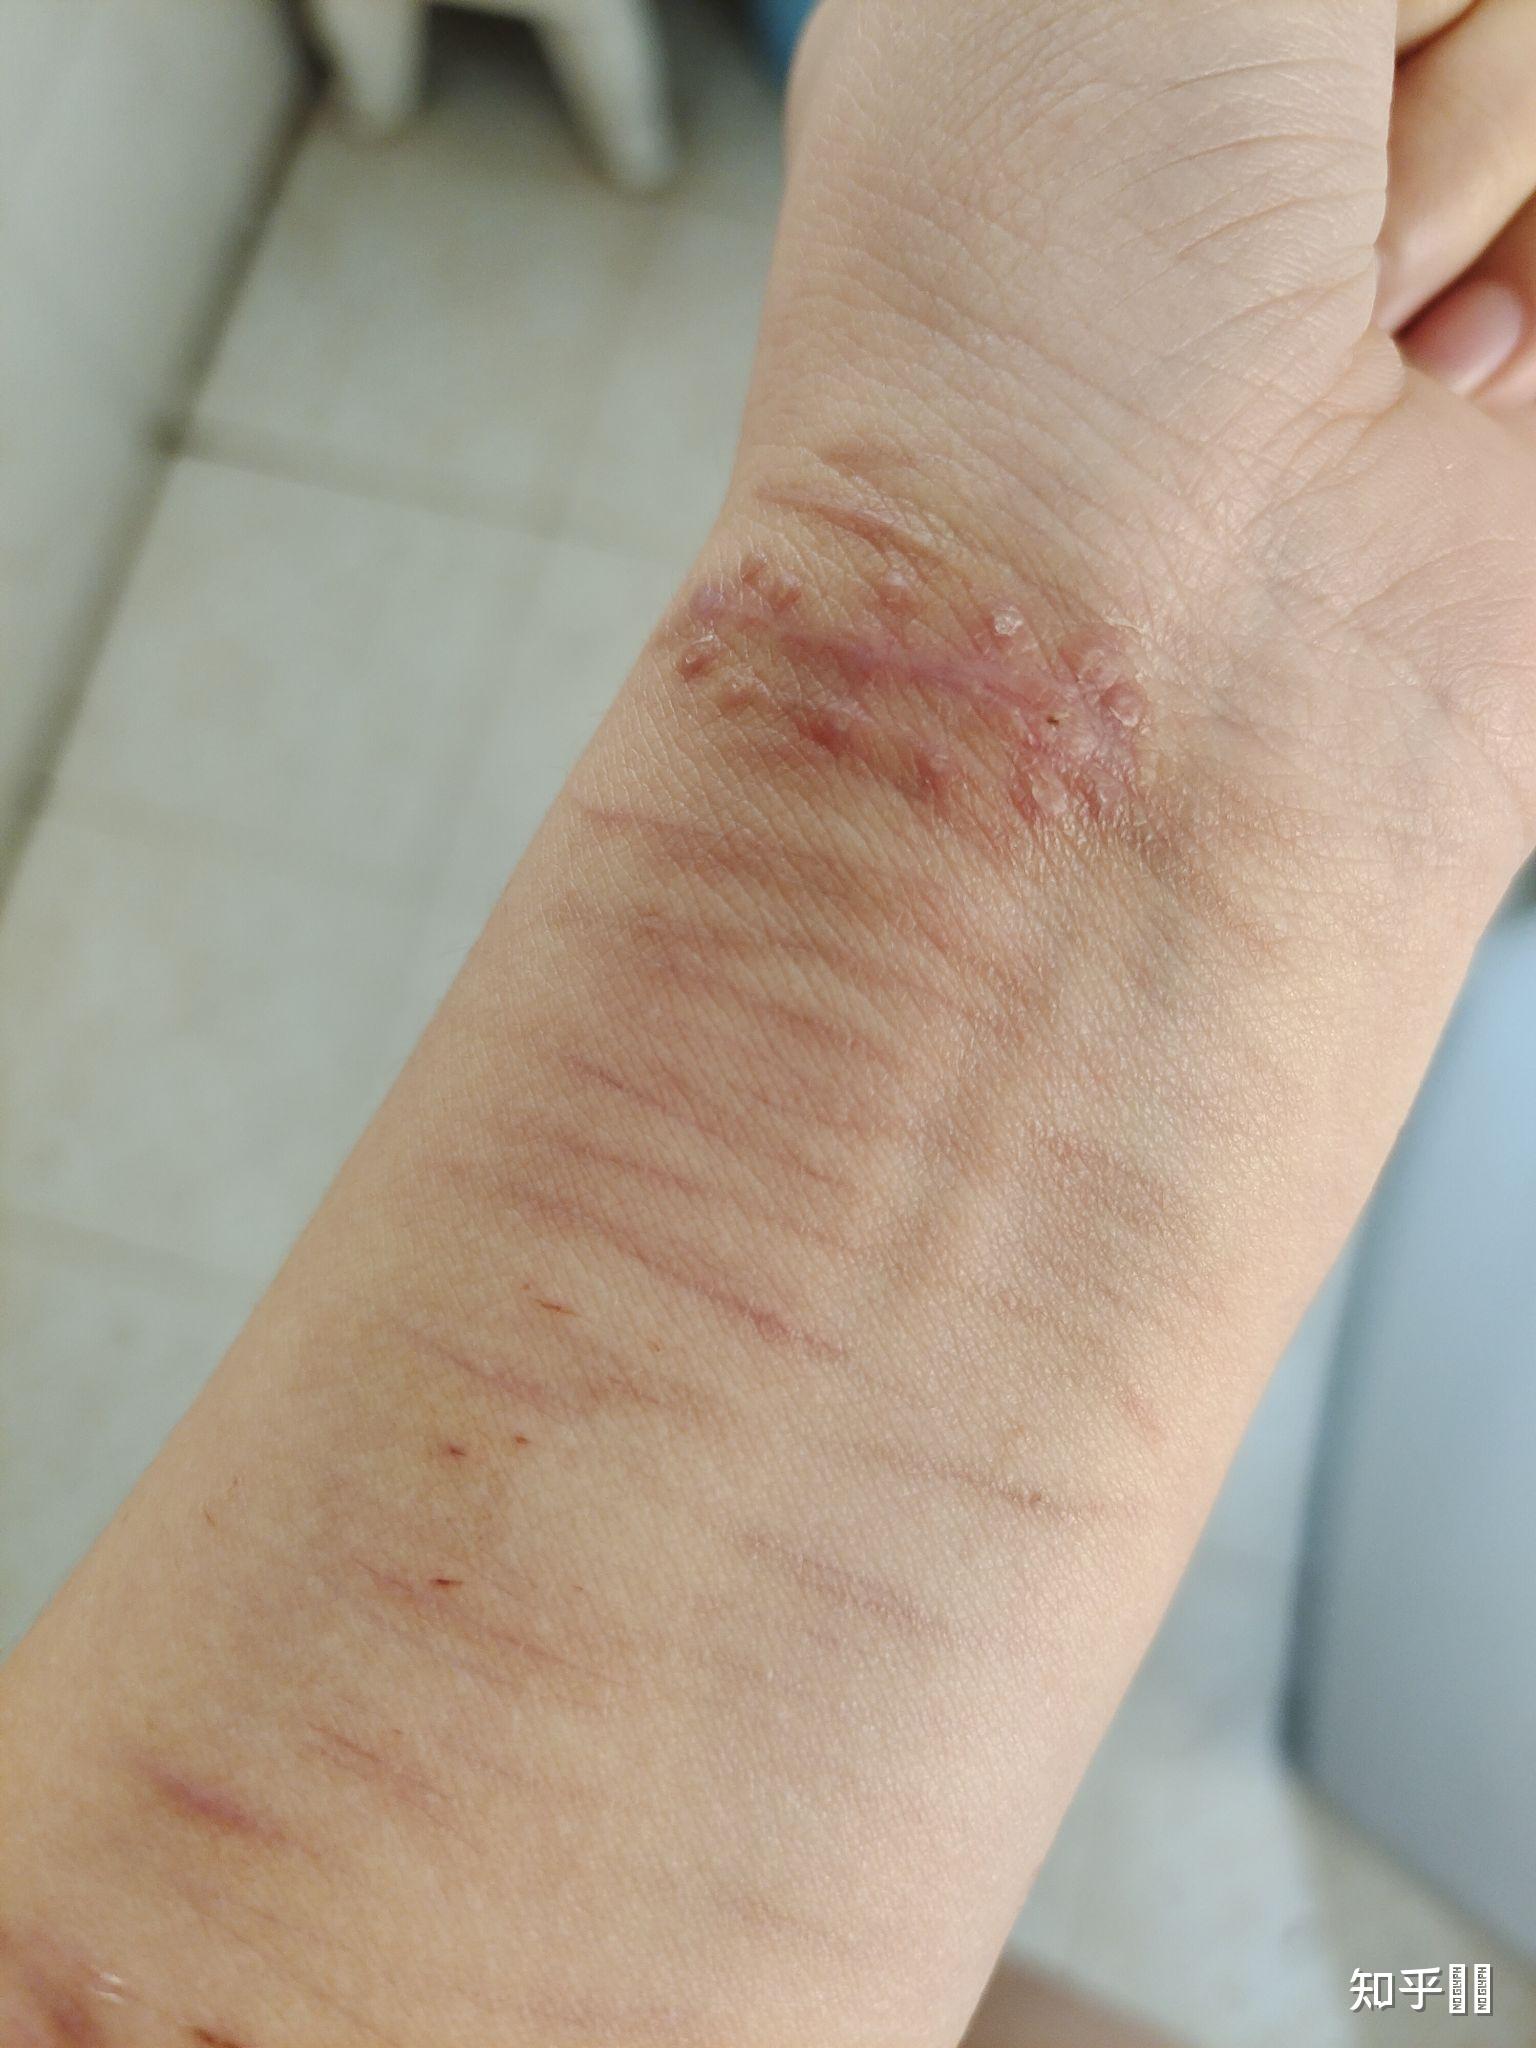 割腕的疤可以去掉吗? 